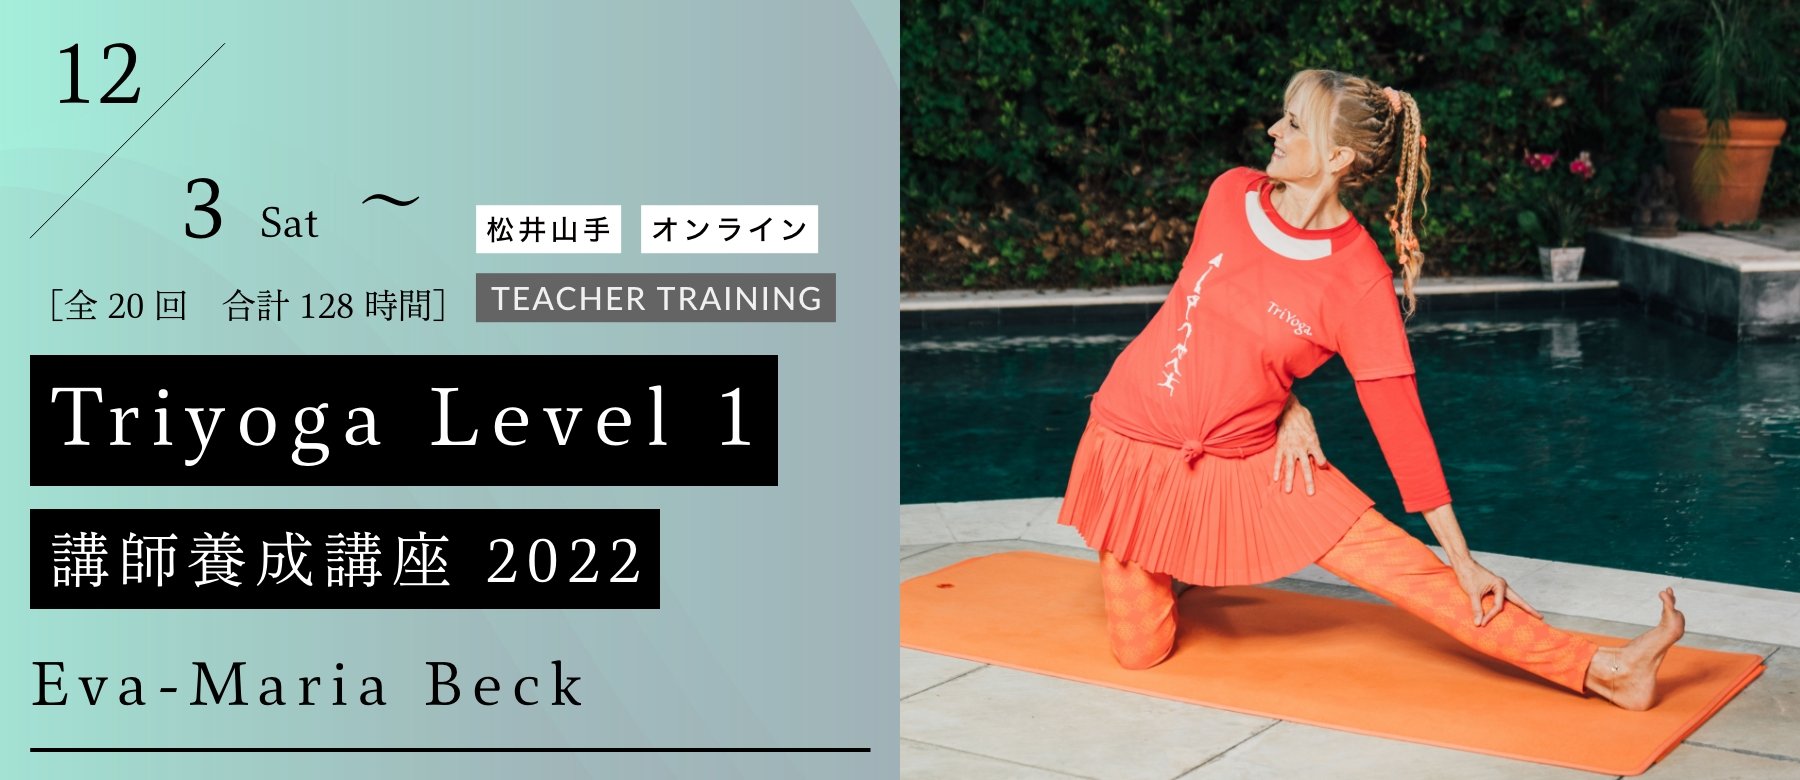 Triyoga Level 1 講師養成講座 2022年度